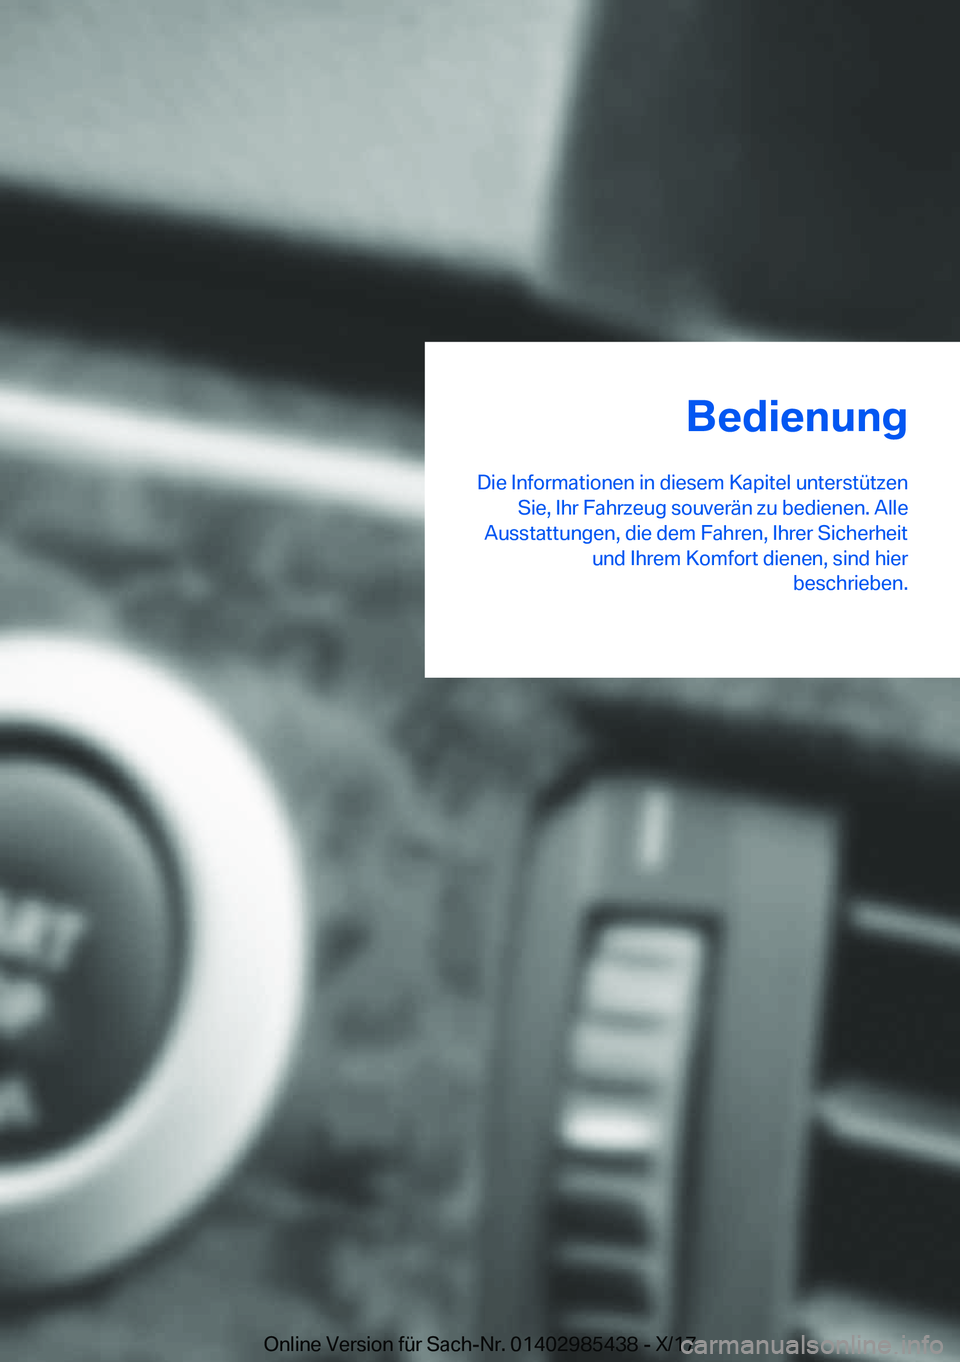 BMW X1 2018  Betriebsanleitungen (in German) �B�e�d�i�e�n�u�n�g
�D�i�e� �I�n�f�o�r�m�a�t�i�o�n�e�n� �i�n� �d�i�e�s�e�m� �K�a�p�i�t�e�l� �u�n�t�e�r�s�t�